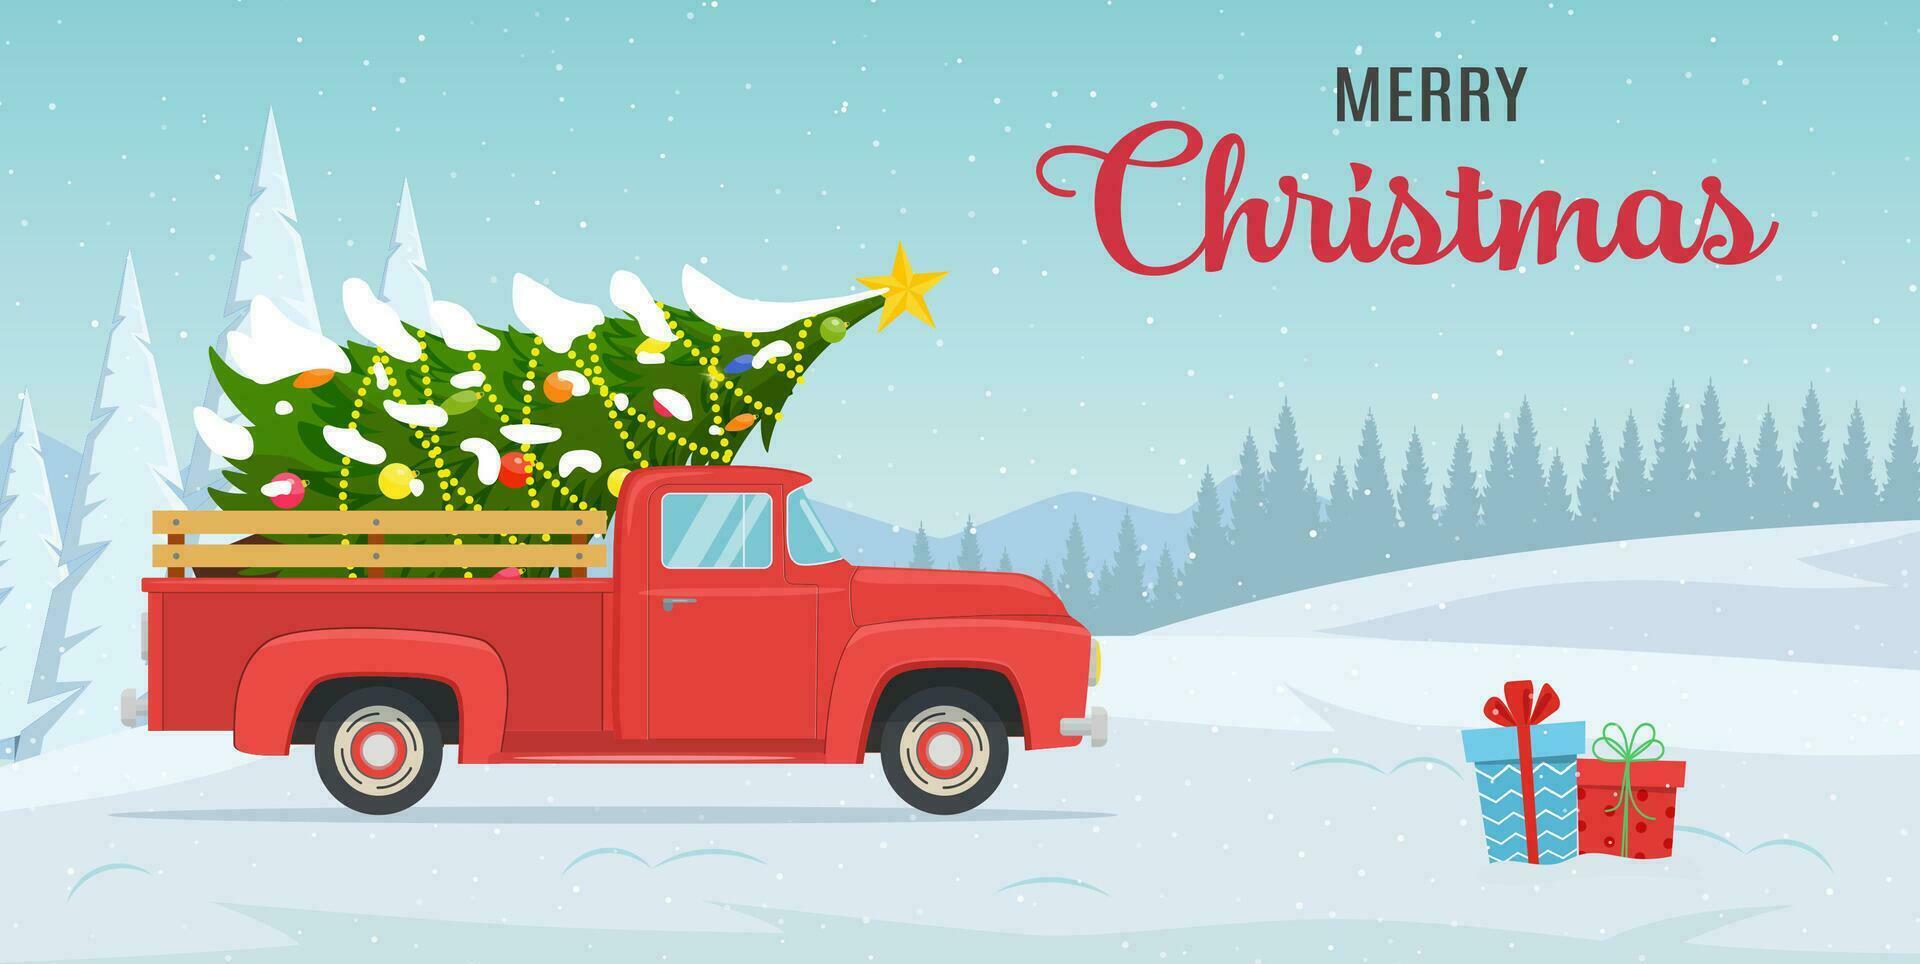 dibujos animados Navidad y nuevo año saludo tarjeta.navidad tarjeta o póster diseño con retro rojo recoger camión con Navidad árbol en tablero. vector ilustración en plano estilo